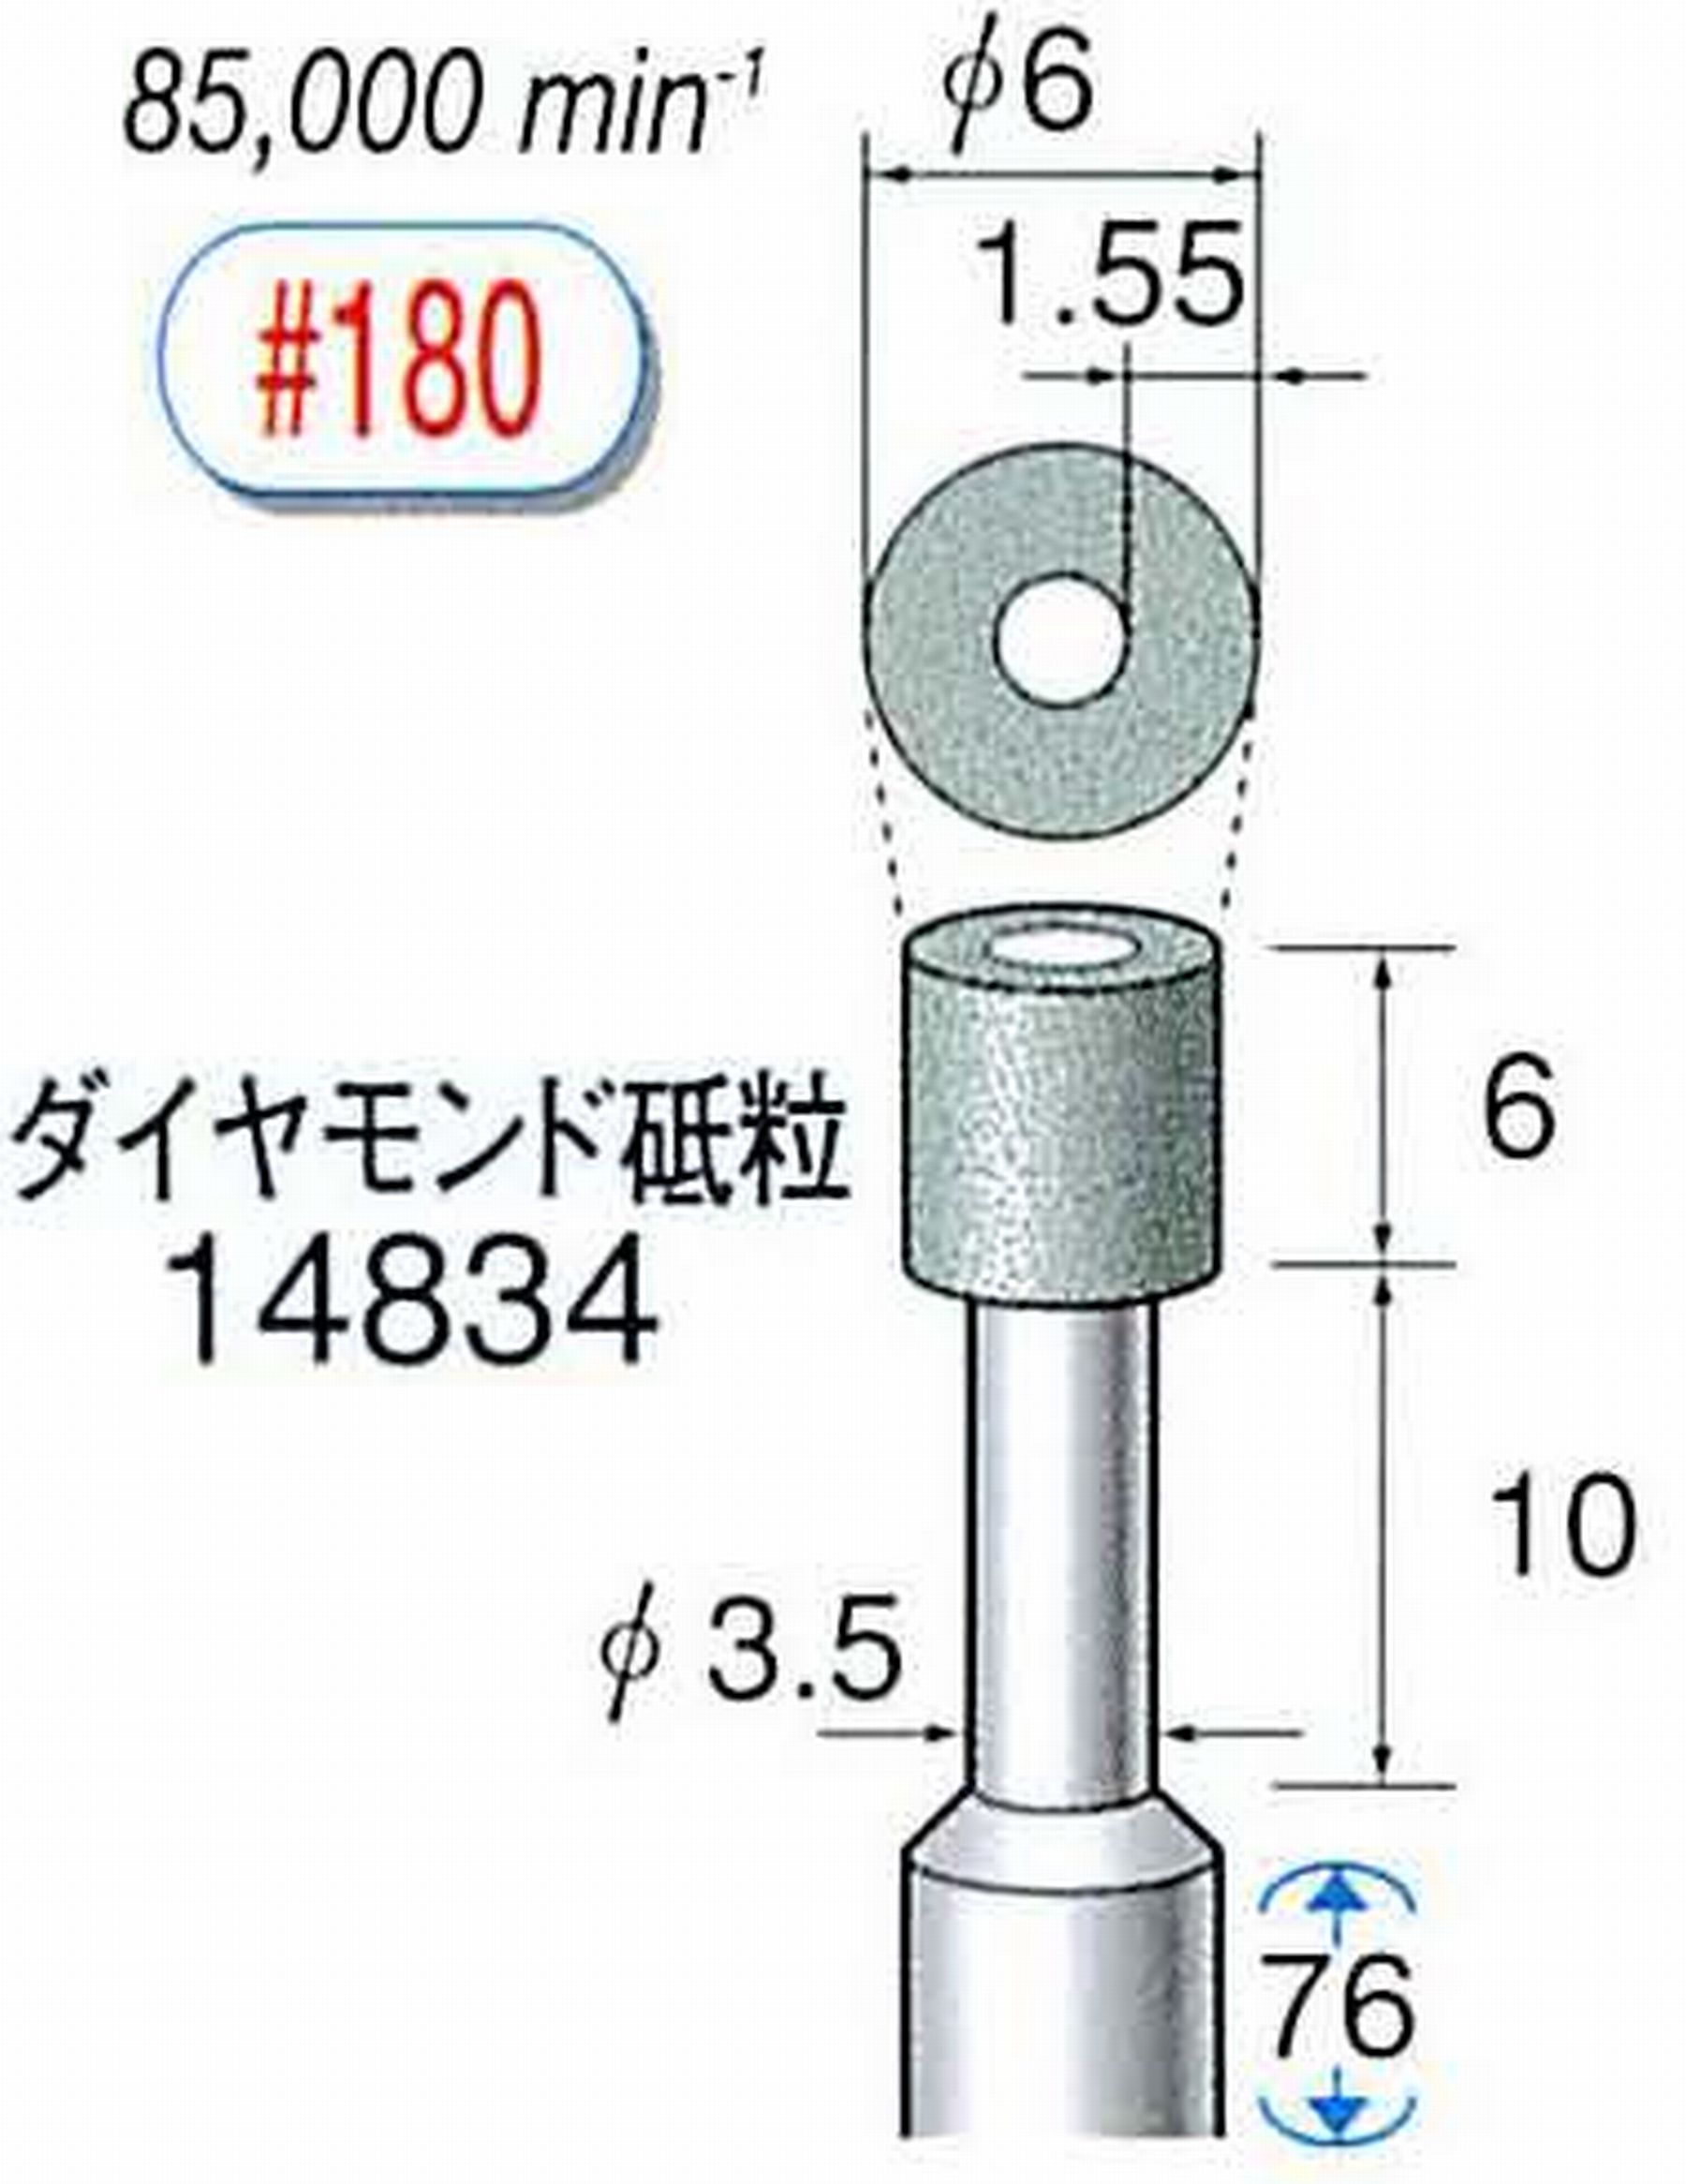 ナカニシ/NAKANISHI ビトリファイドダイヤモンド砥石 ダイヤモンド砥粒 軸径(シャンク)φ6.0mm 14834